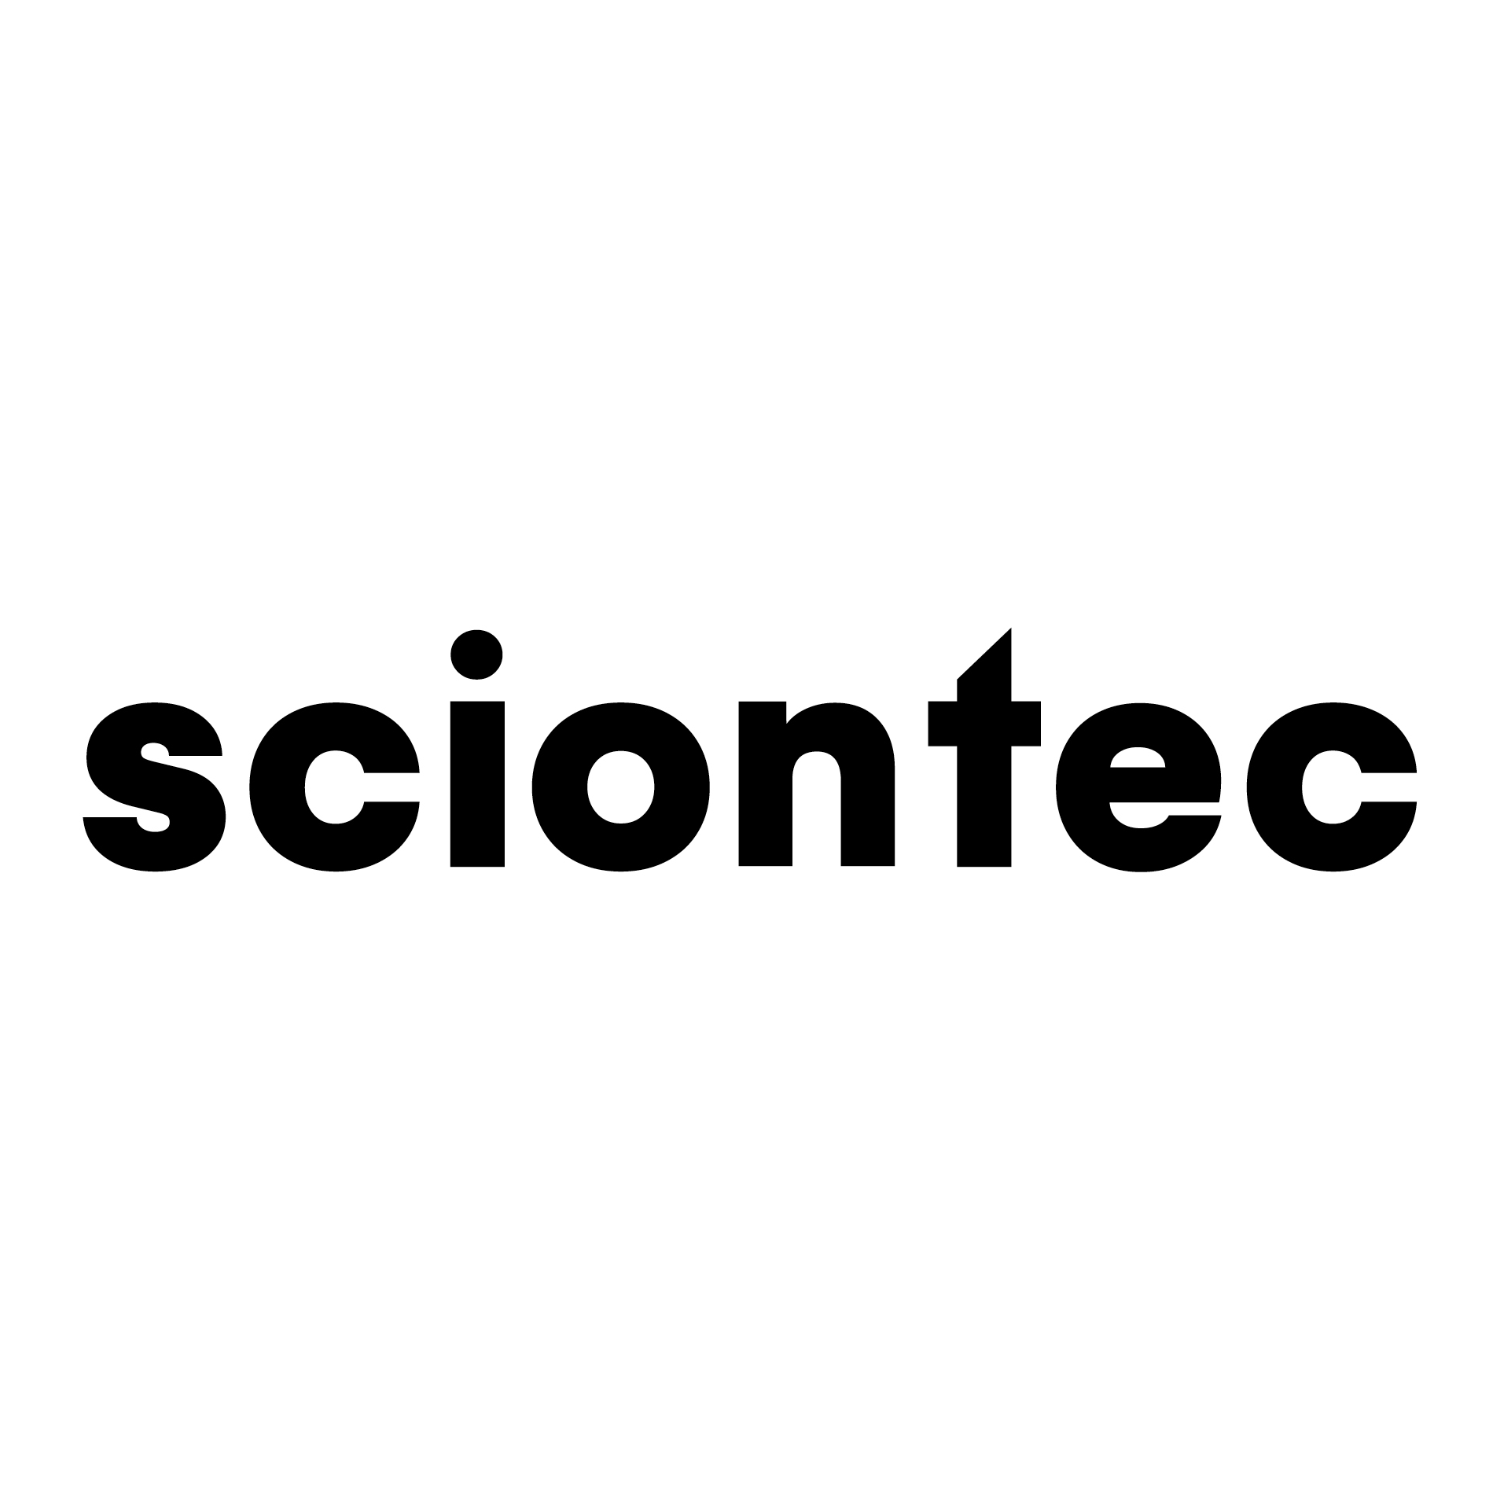 Sciontec Developments LTD